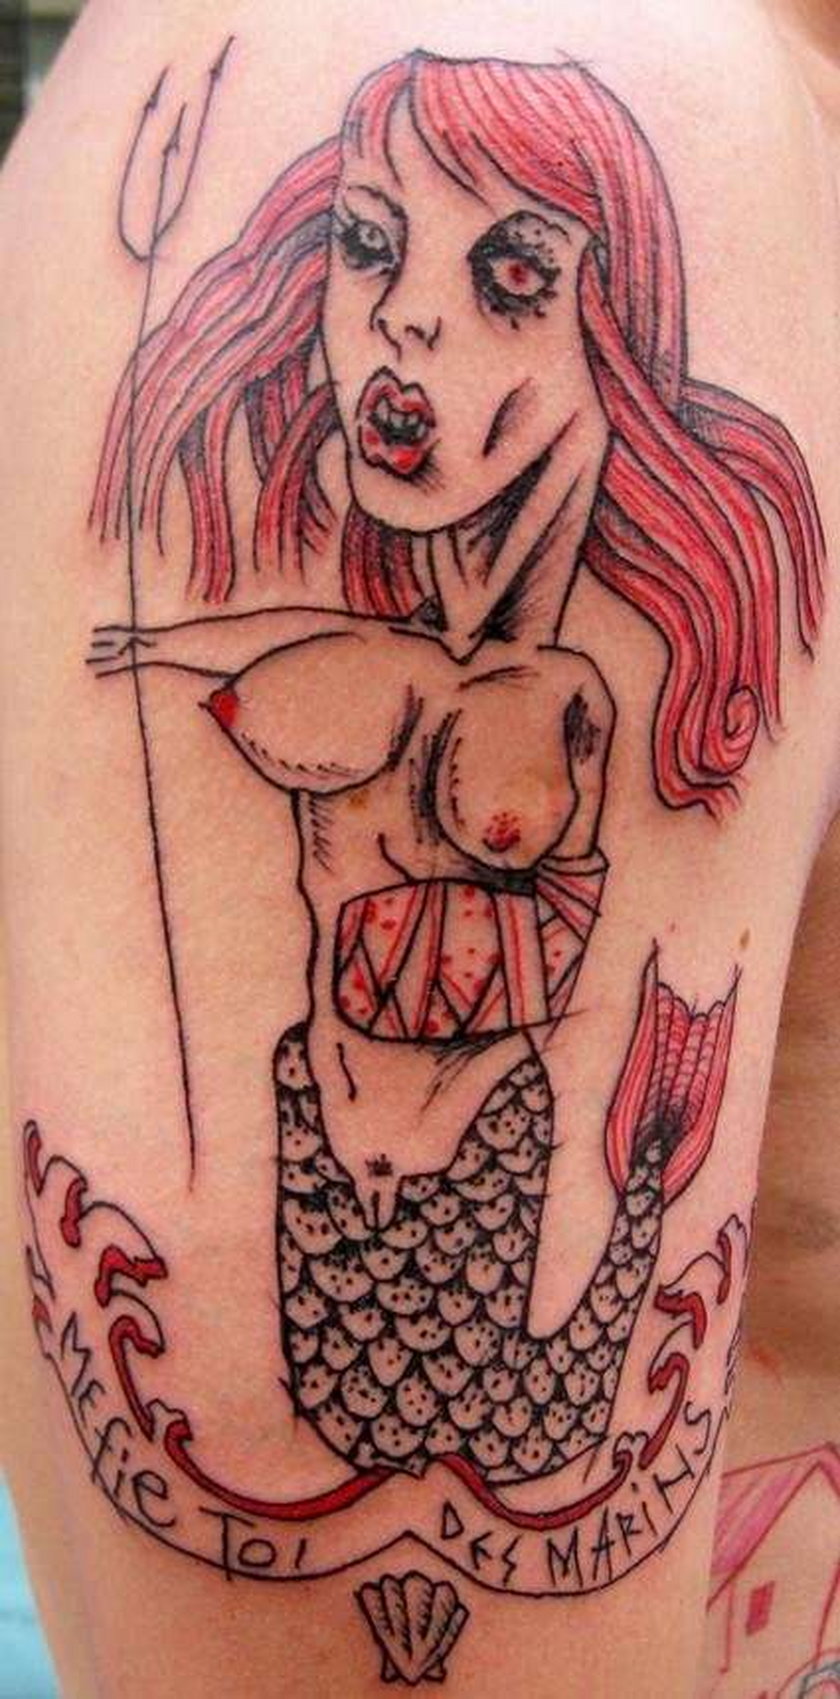 Oto tatuaże, które będą nosili polscy celebryci?